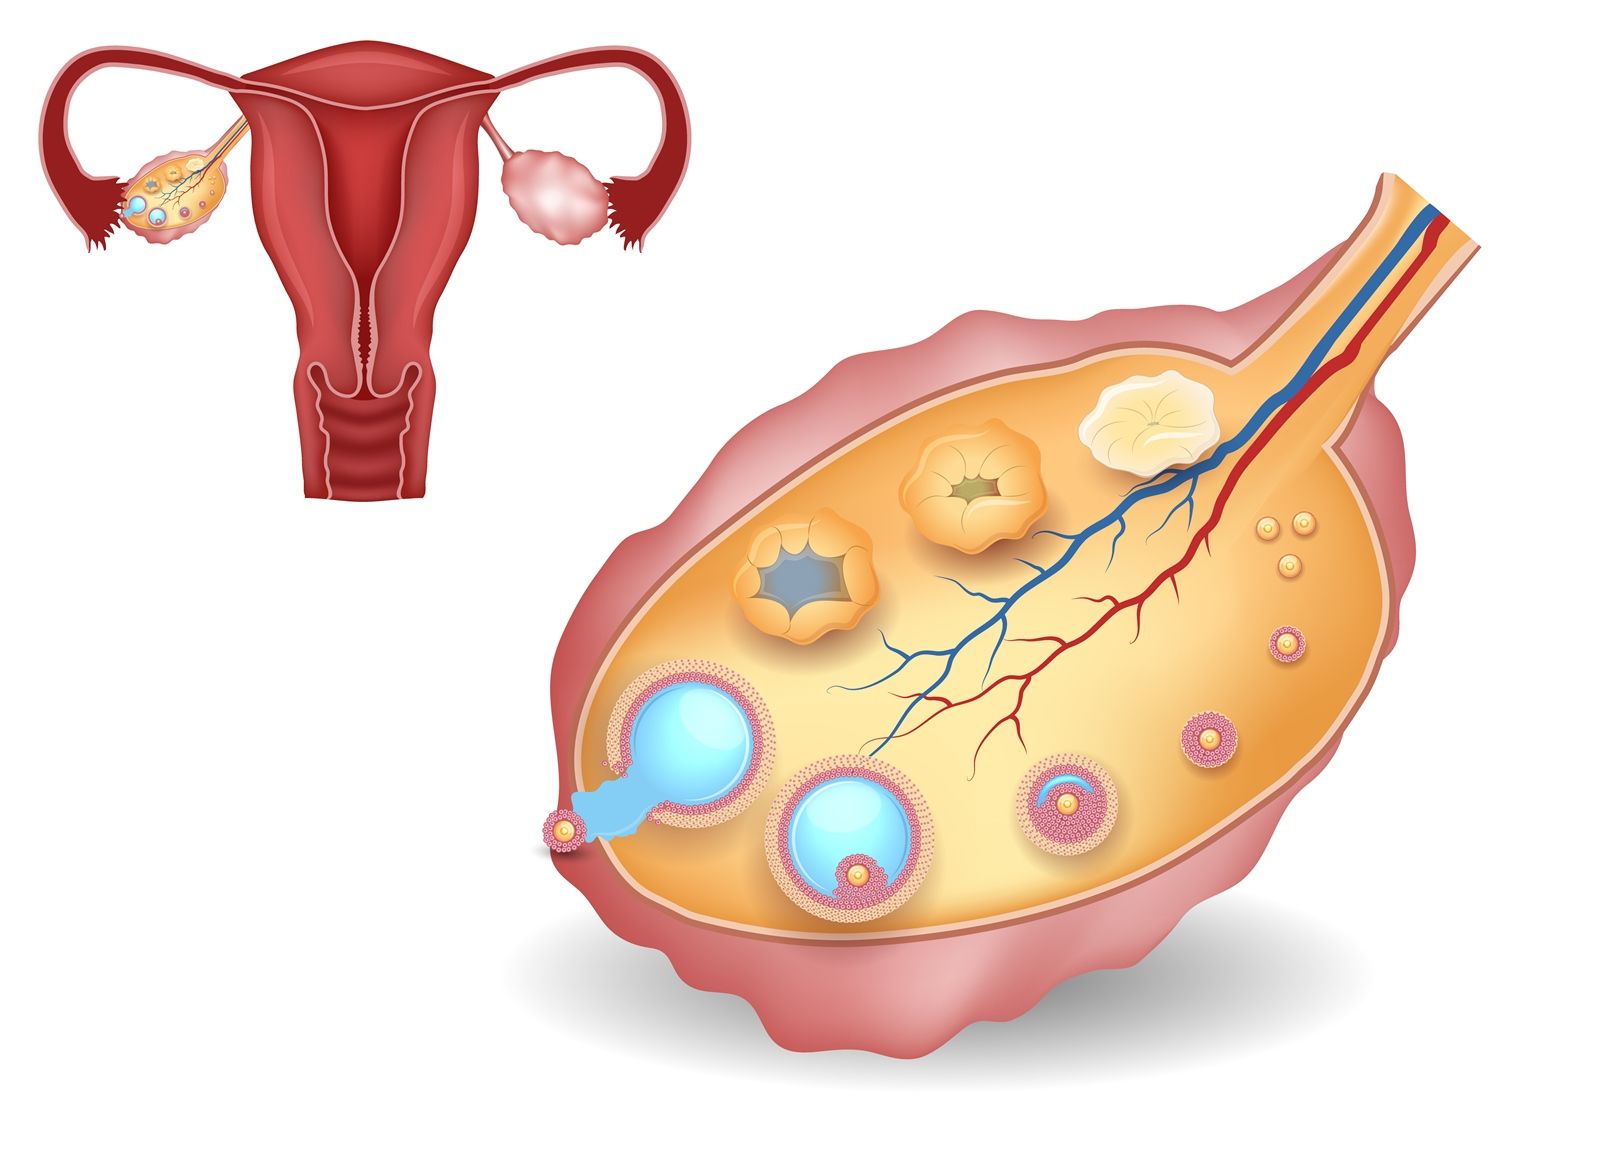 Овариальный резерв яичников